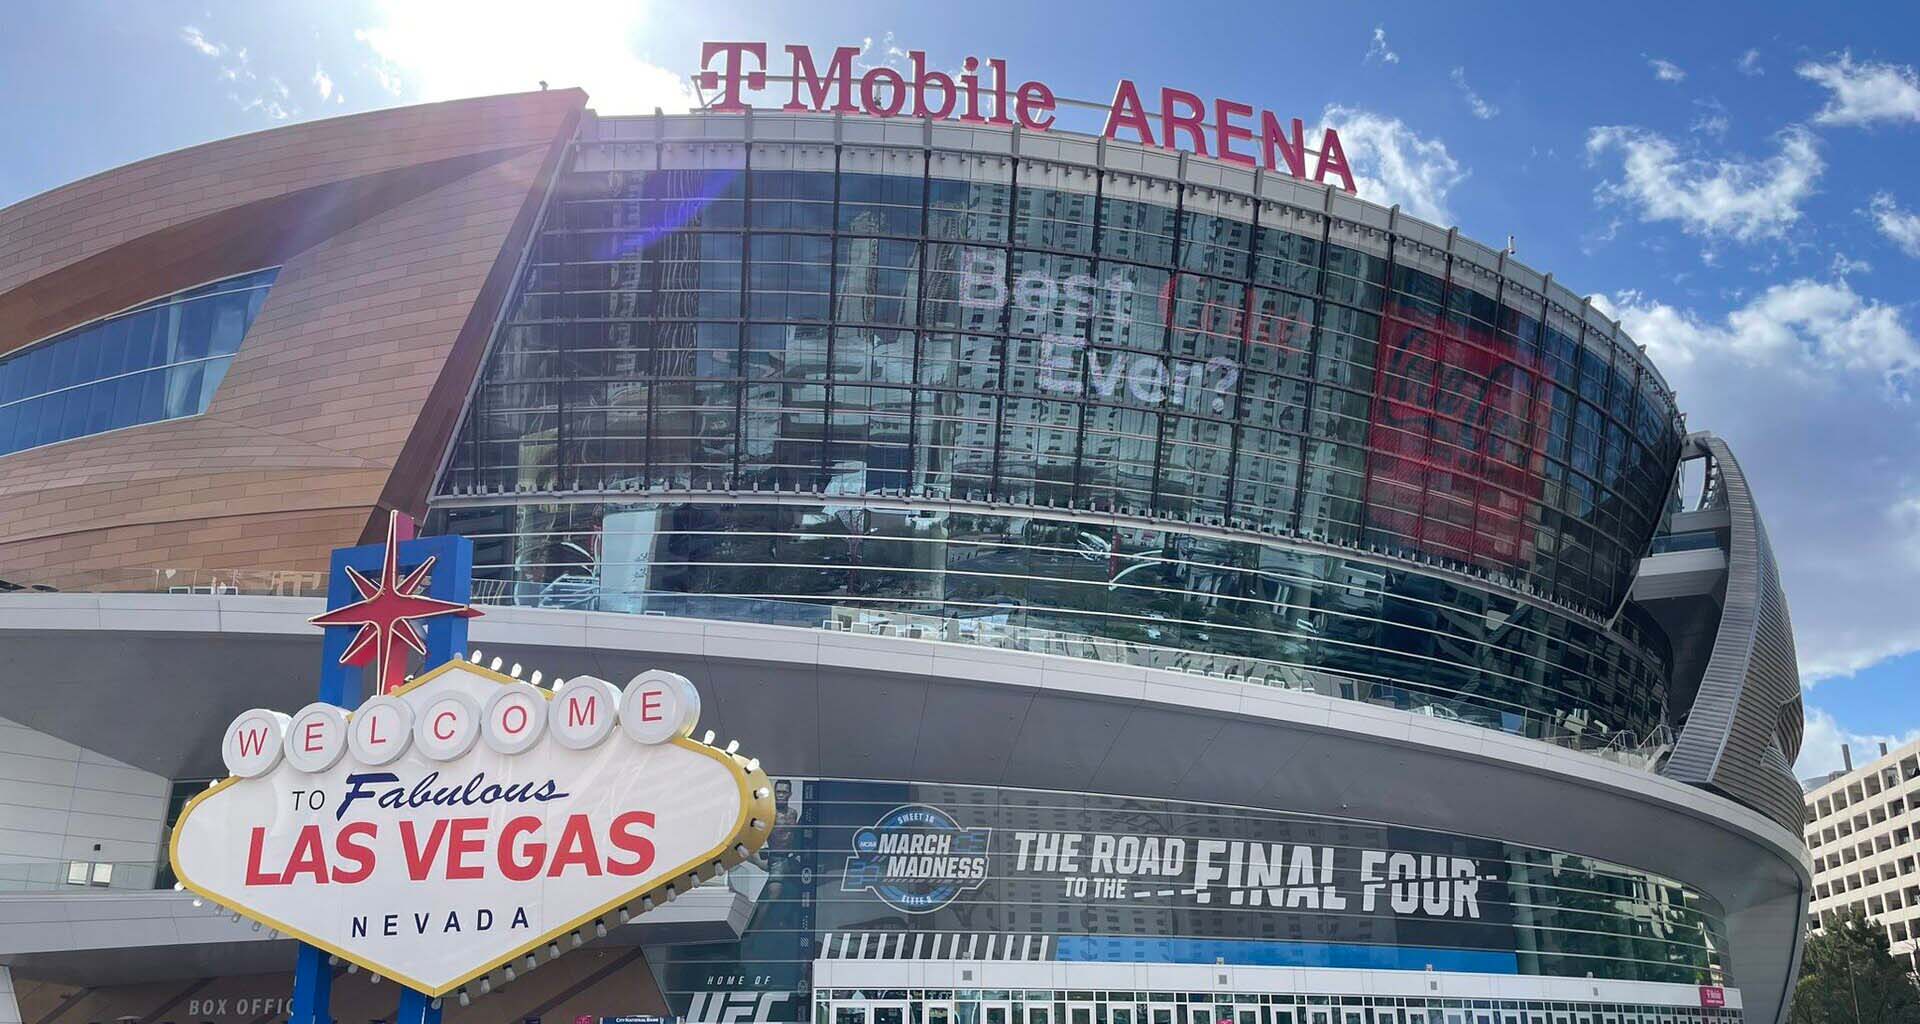 Las Vegas recibió por primera vez el torneo de baloncesto masculino de la NCAA, también conocido como ‘March Madness’, en marzo del año pasado. El T-Mobile Arena acogió el color universitario de los enfrentamientos del ‘Sweet 16’ y ‘Elite Eight’.